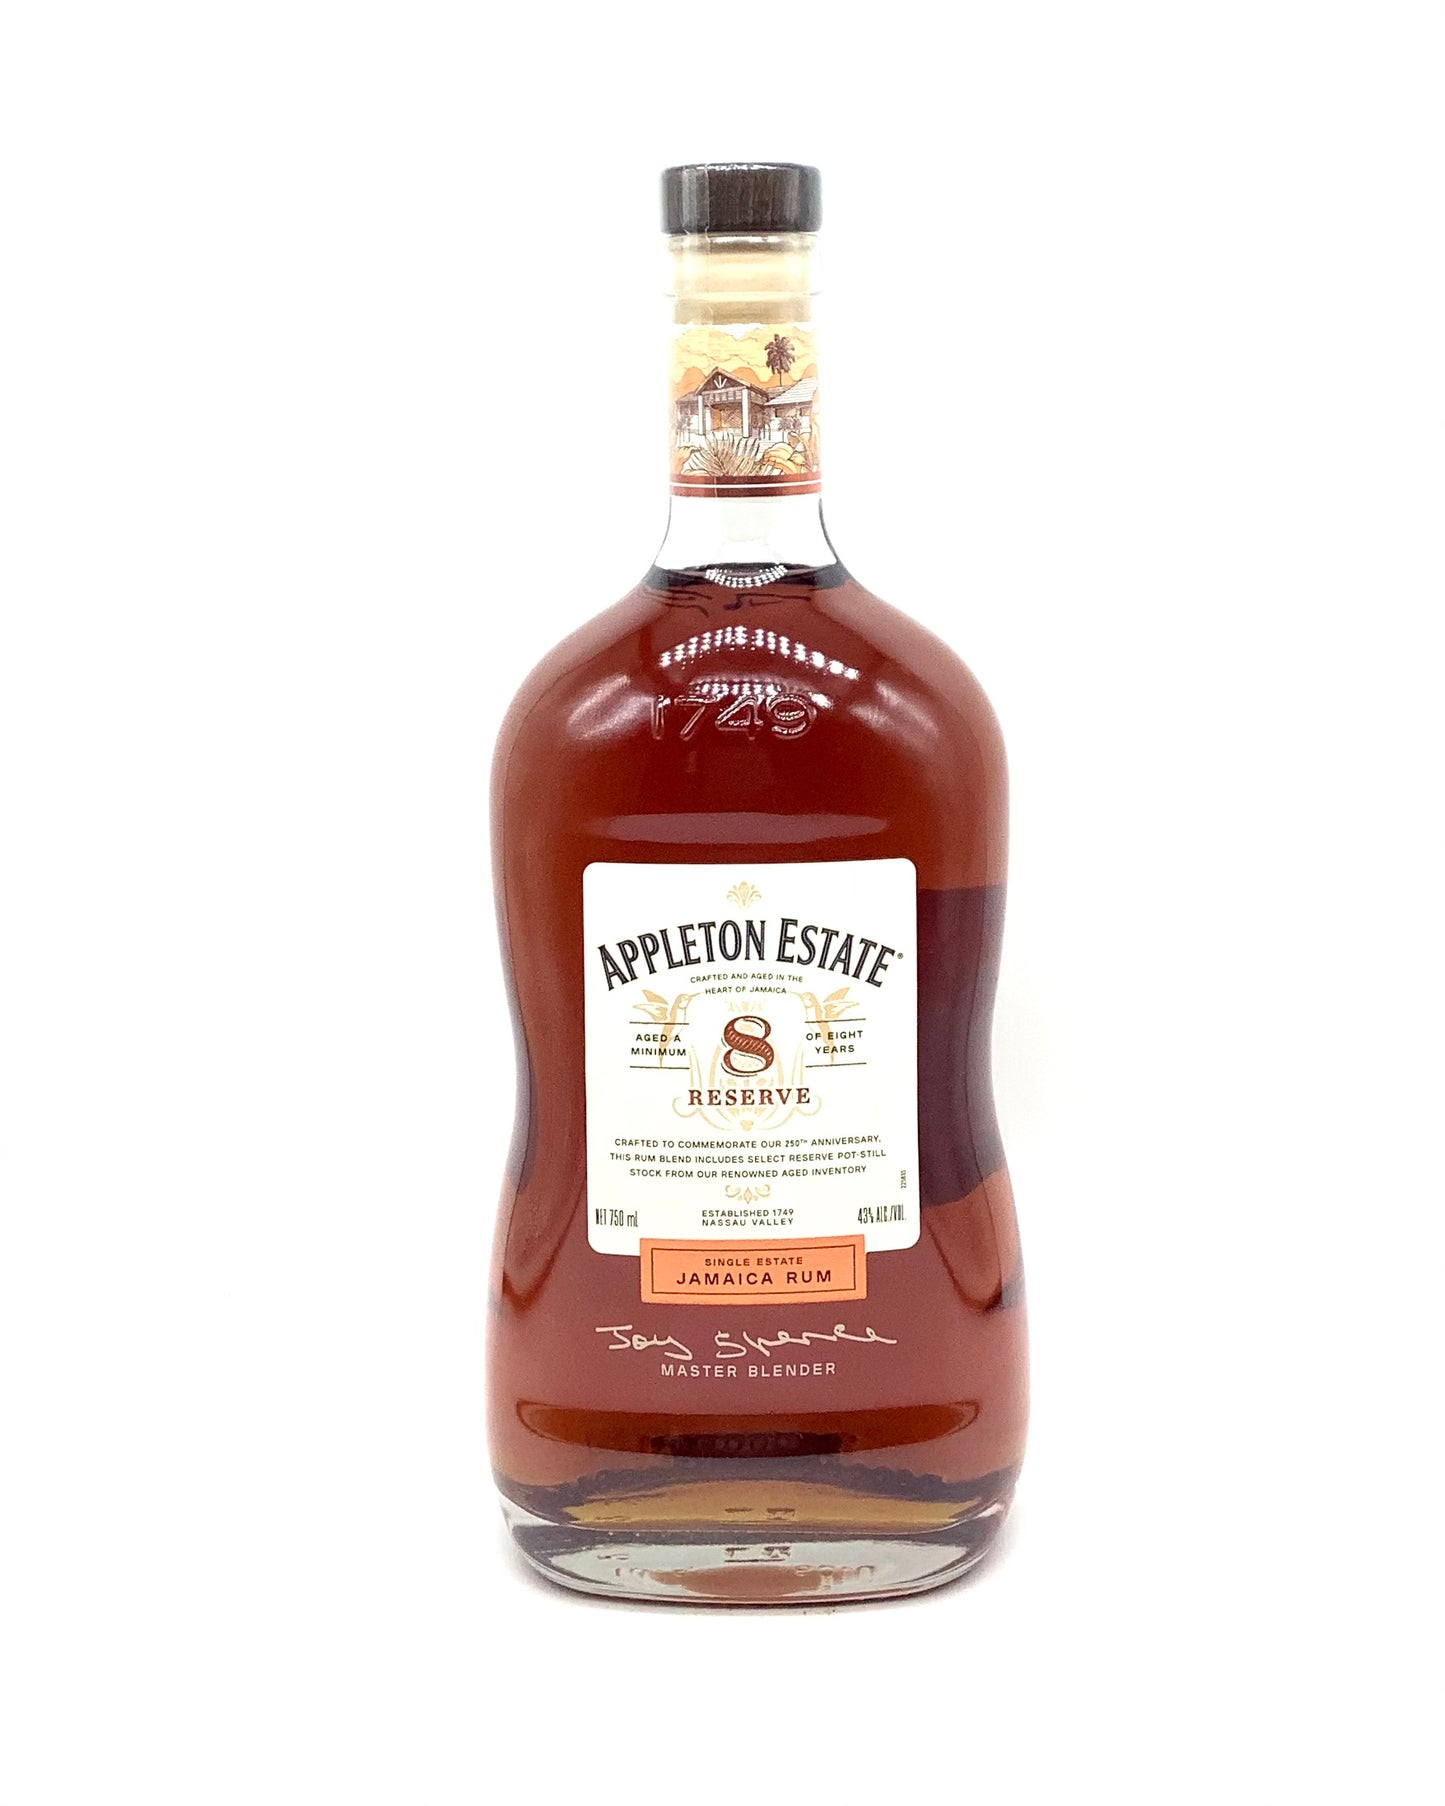 Appleton Estate 8 Year Reserve Rum Jamaica